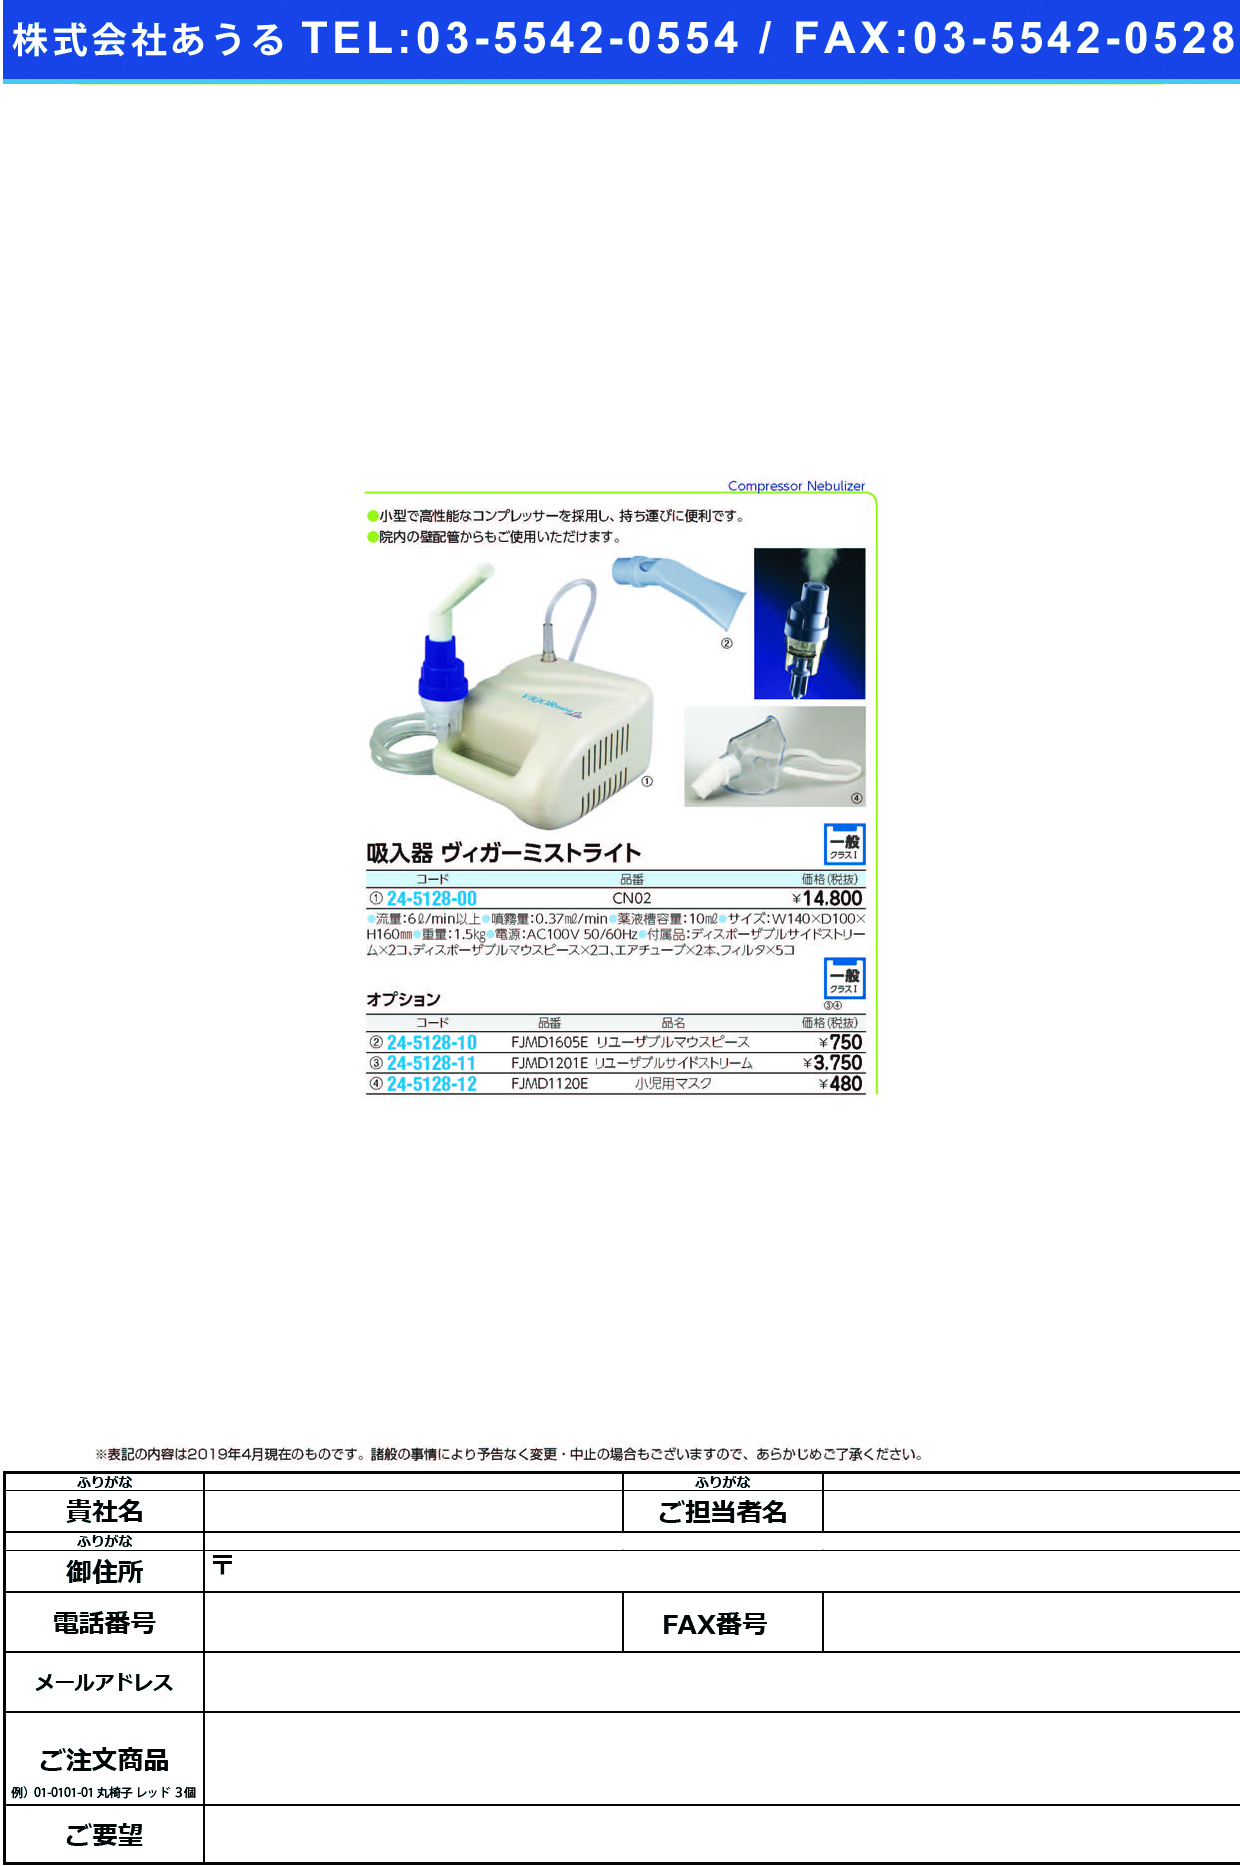 (24-5128-00)吸入器ヴィガーミストライト CN02 ｳﾞｨｶﾞｰﾐｽﾄﾗｲﾄ【1台単位】【2019年カタログ商品】